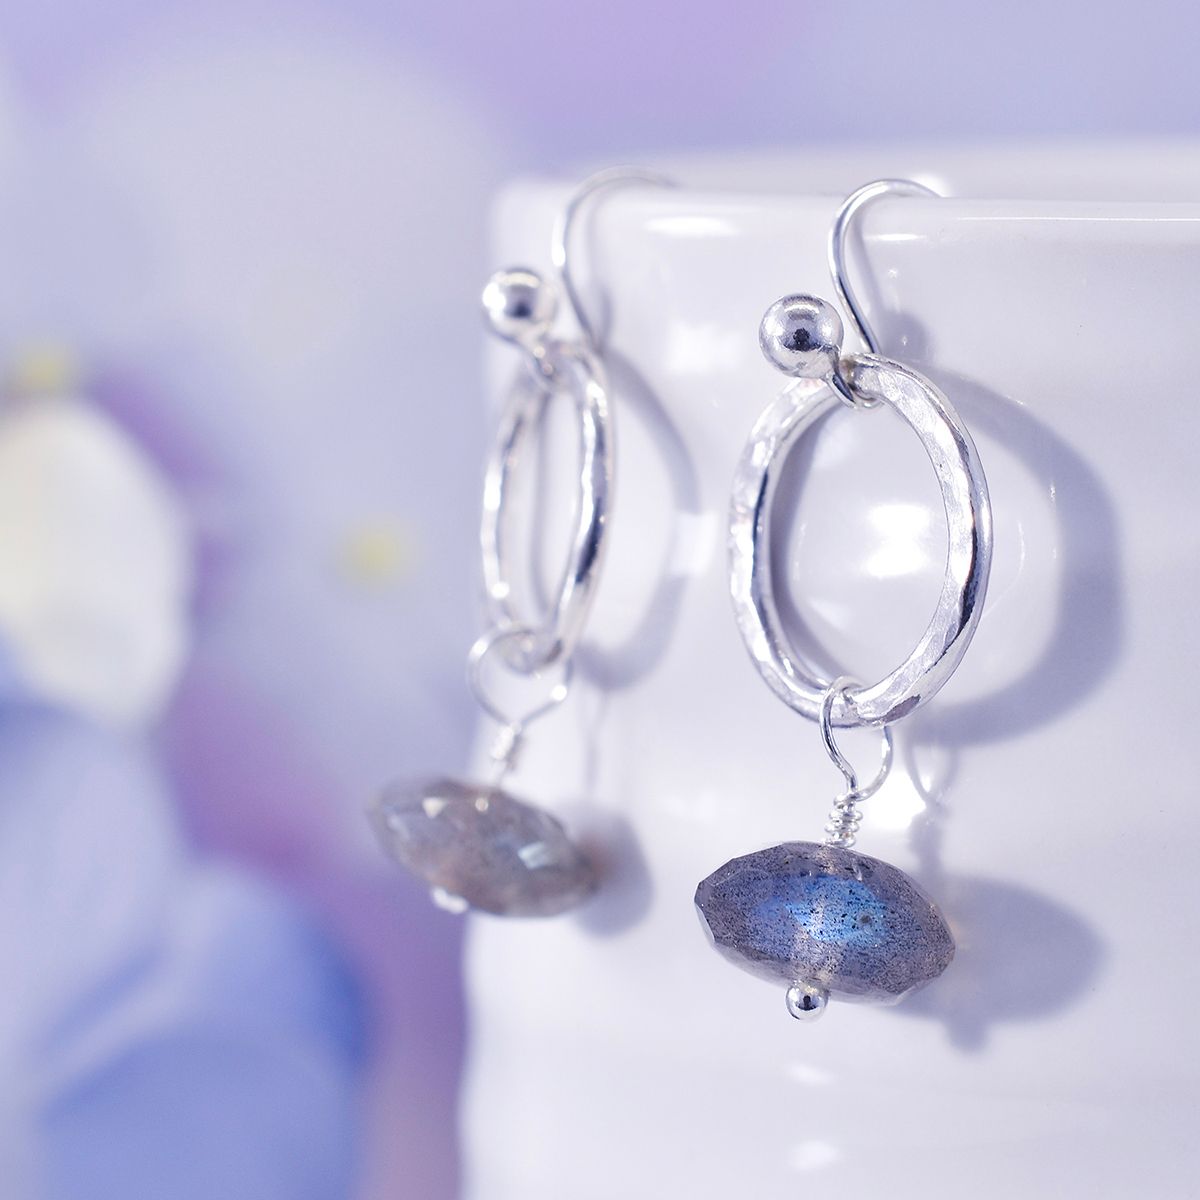 Soldered Circle Hoop Earrings With Beads Tutorial